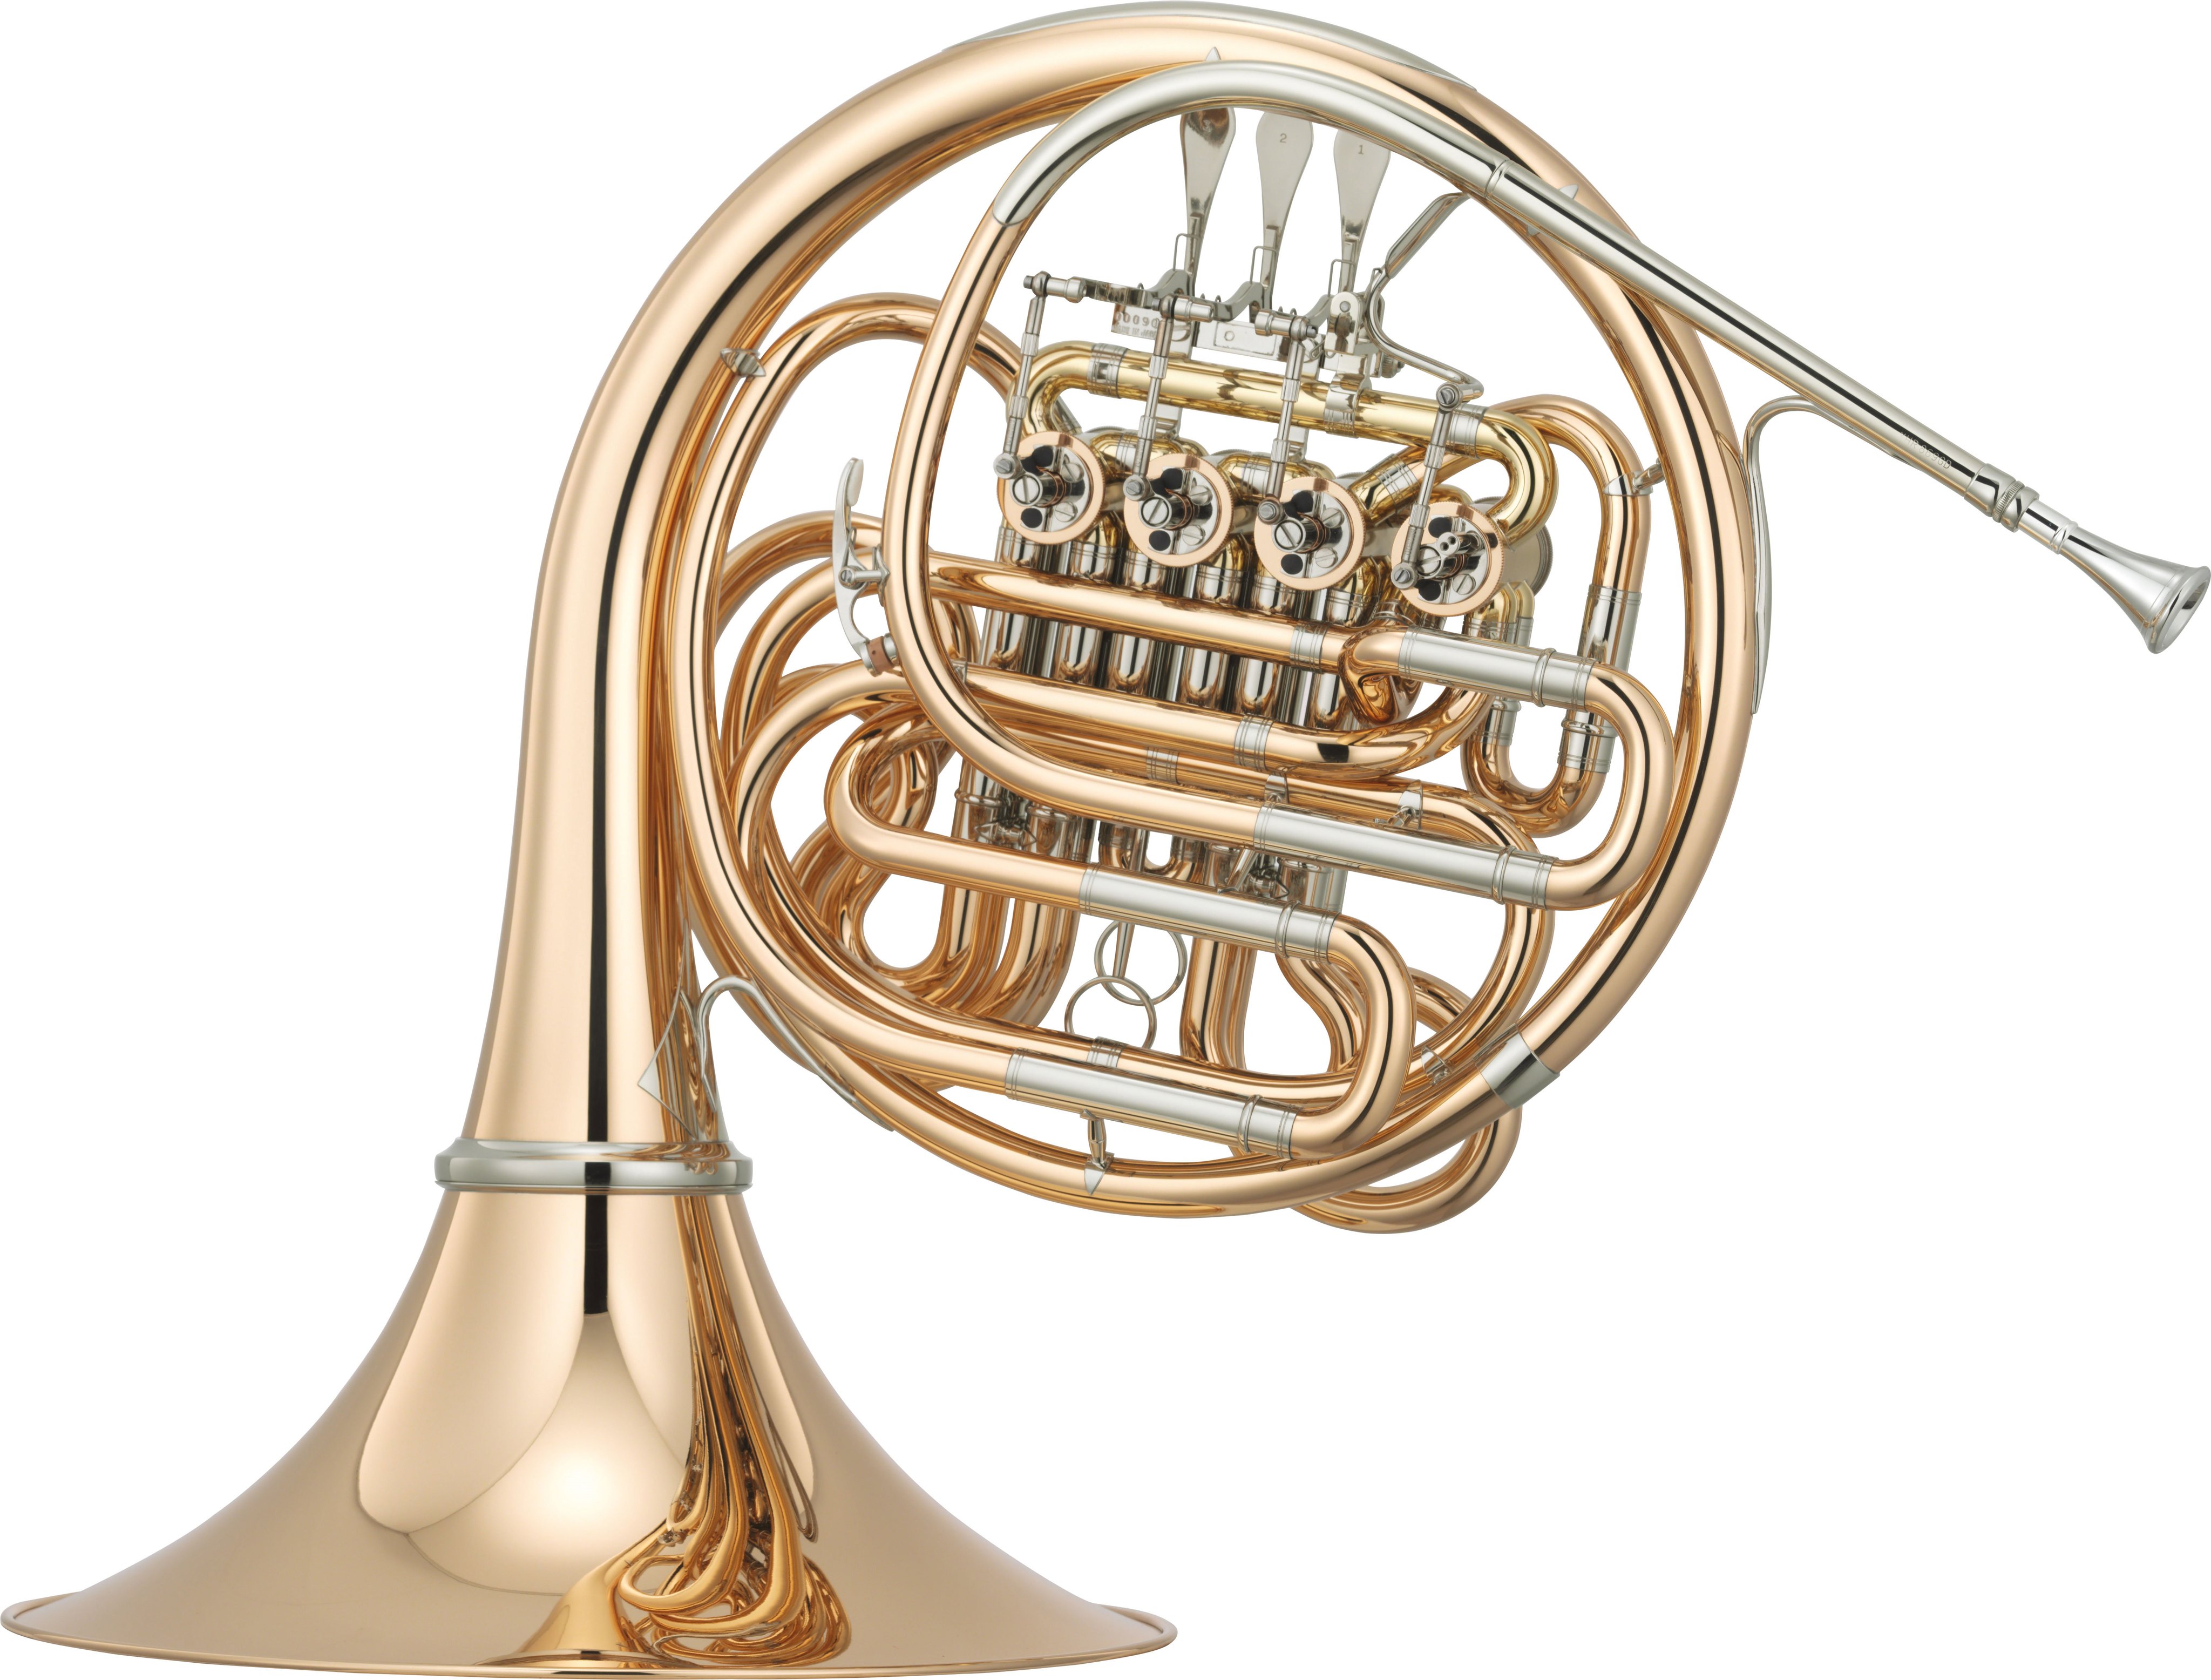 Yhr 869d Descripción Trompas Instrumentos De Viento De Madera Y